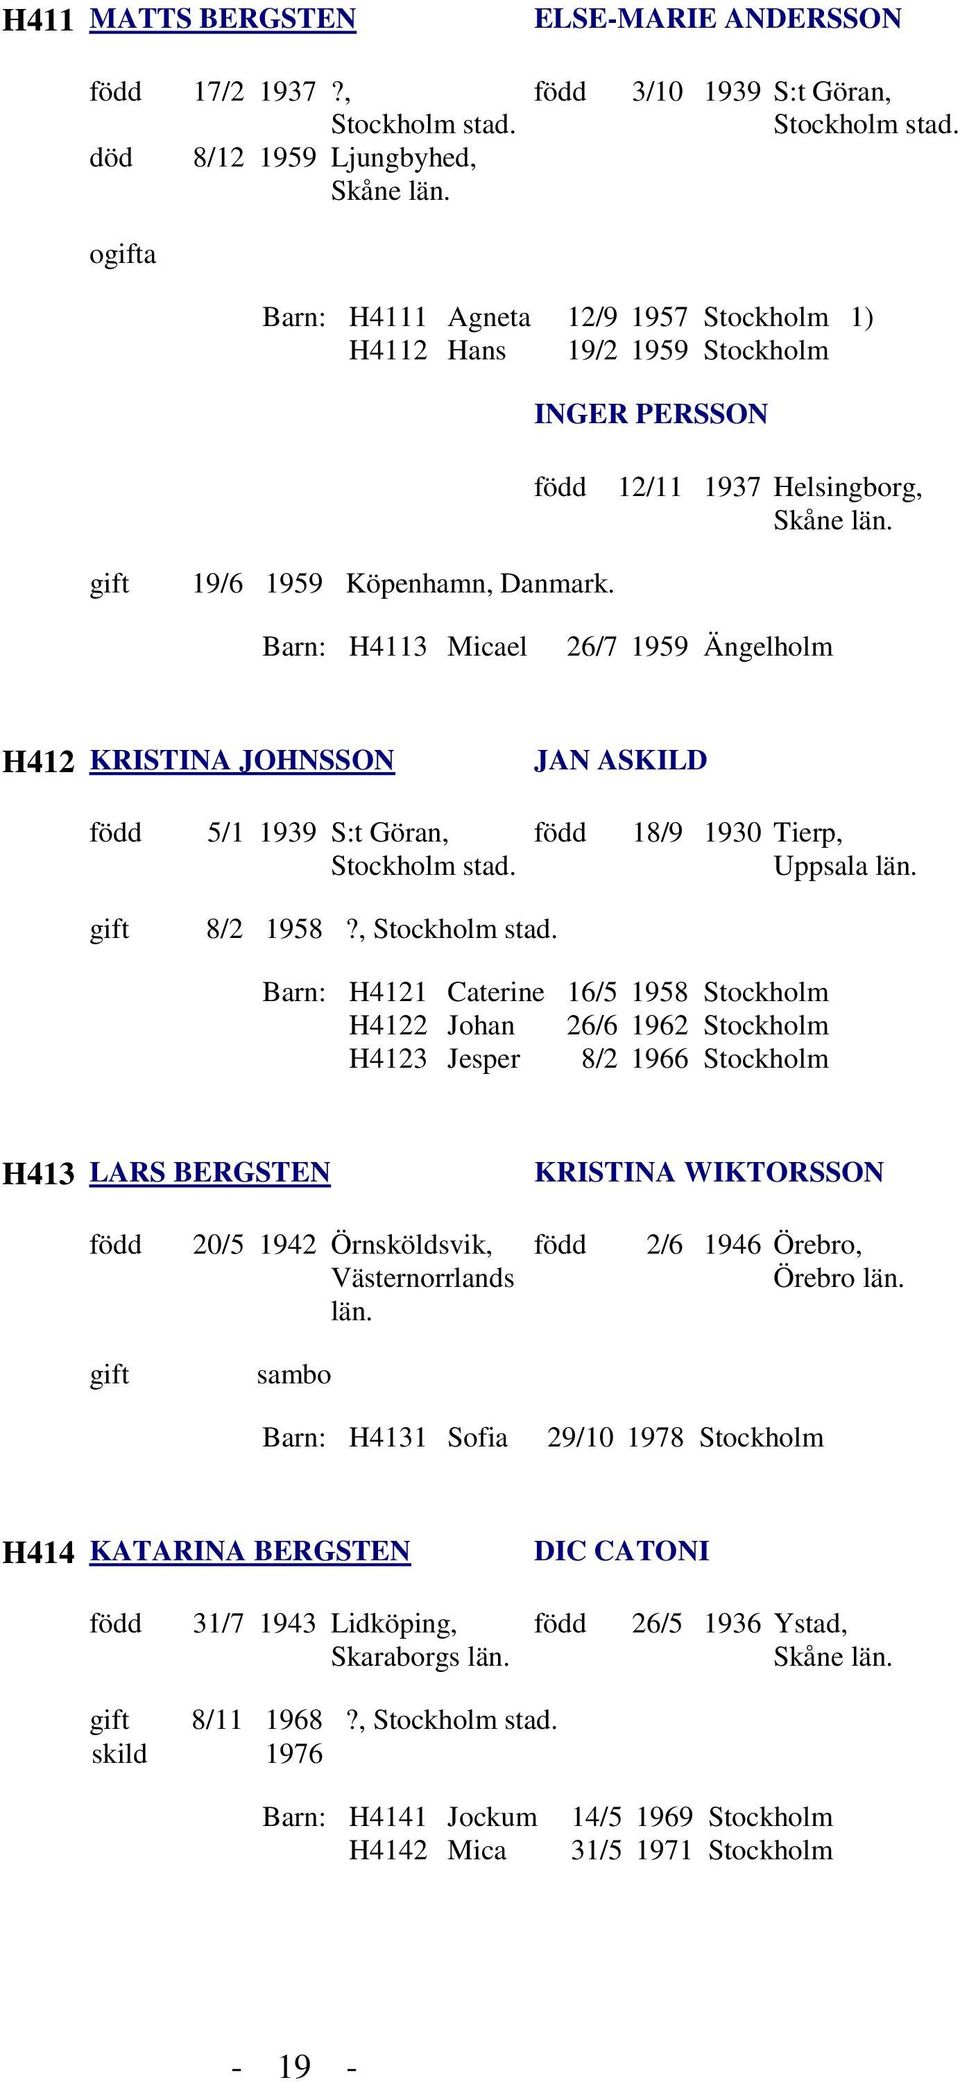 Barn: H4113 Micael 26/7 1959 Ängelholm H412 KRISTINA JOHNSSON JAN ASKILD 5/1 1939 S:t Göran, 8/2 1958?, 18/9 1930 Tierp, Uppsala län.